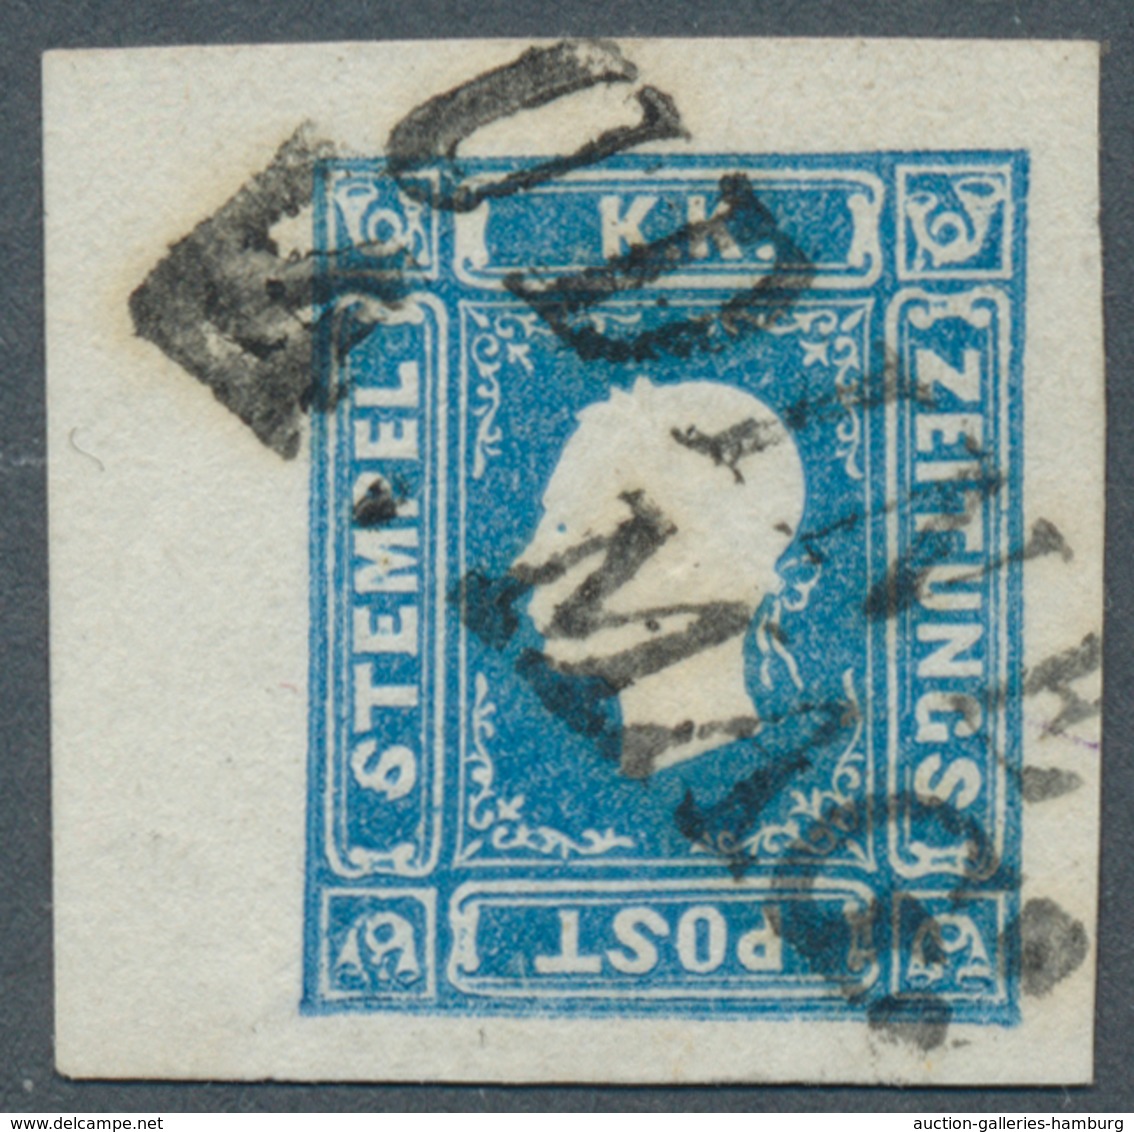 Österreich: 1858, (1,05 Kreuzer/Soldi) Blau Zeitungsmarke, Type I, Allseits Breit- Bis überrandig Vo - Neufs